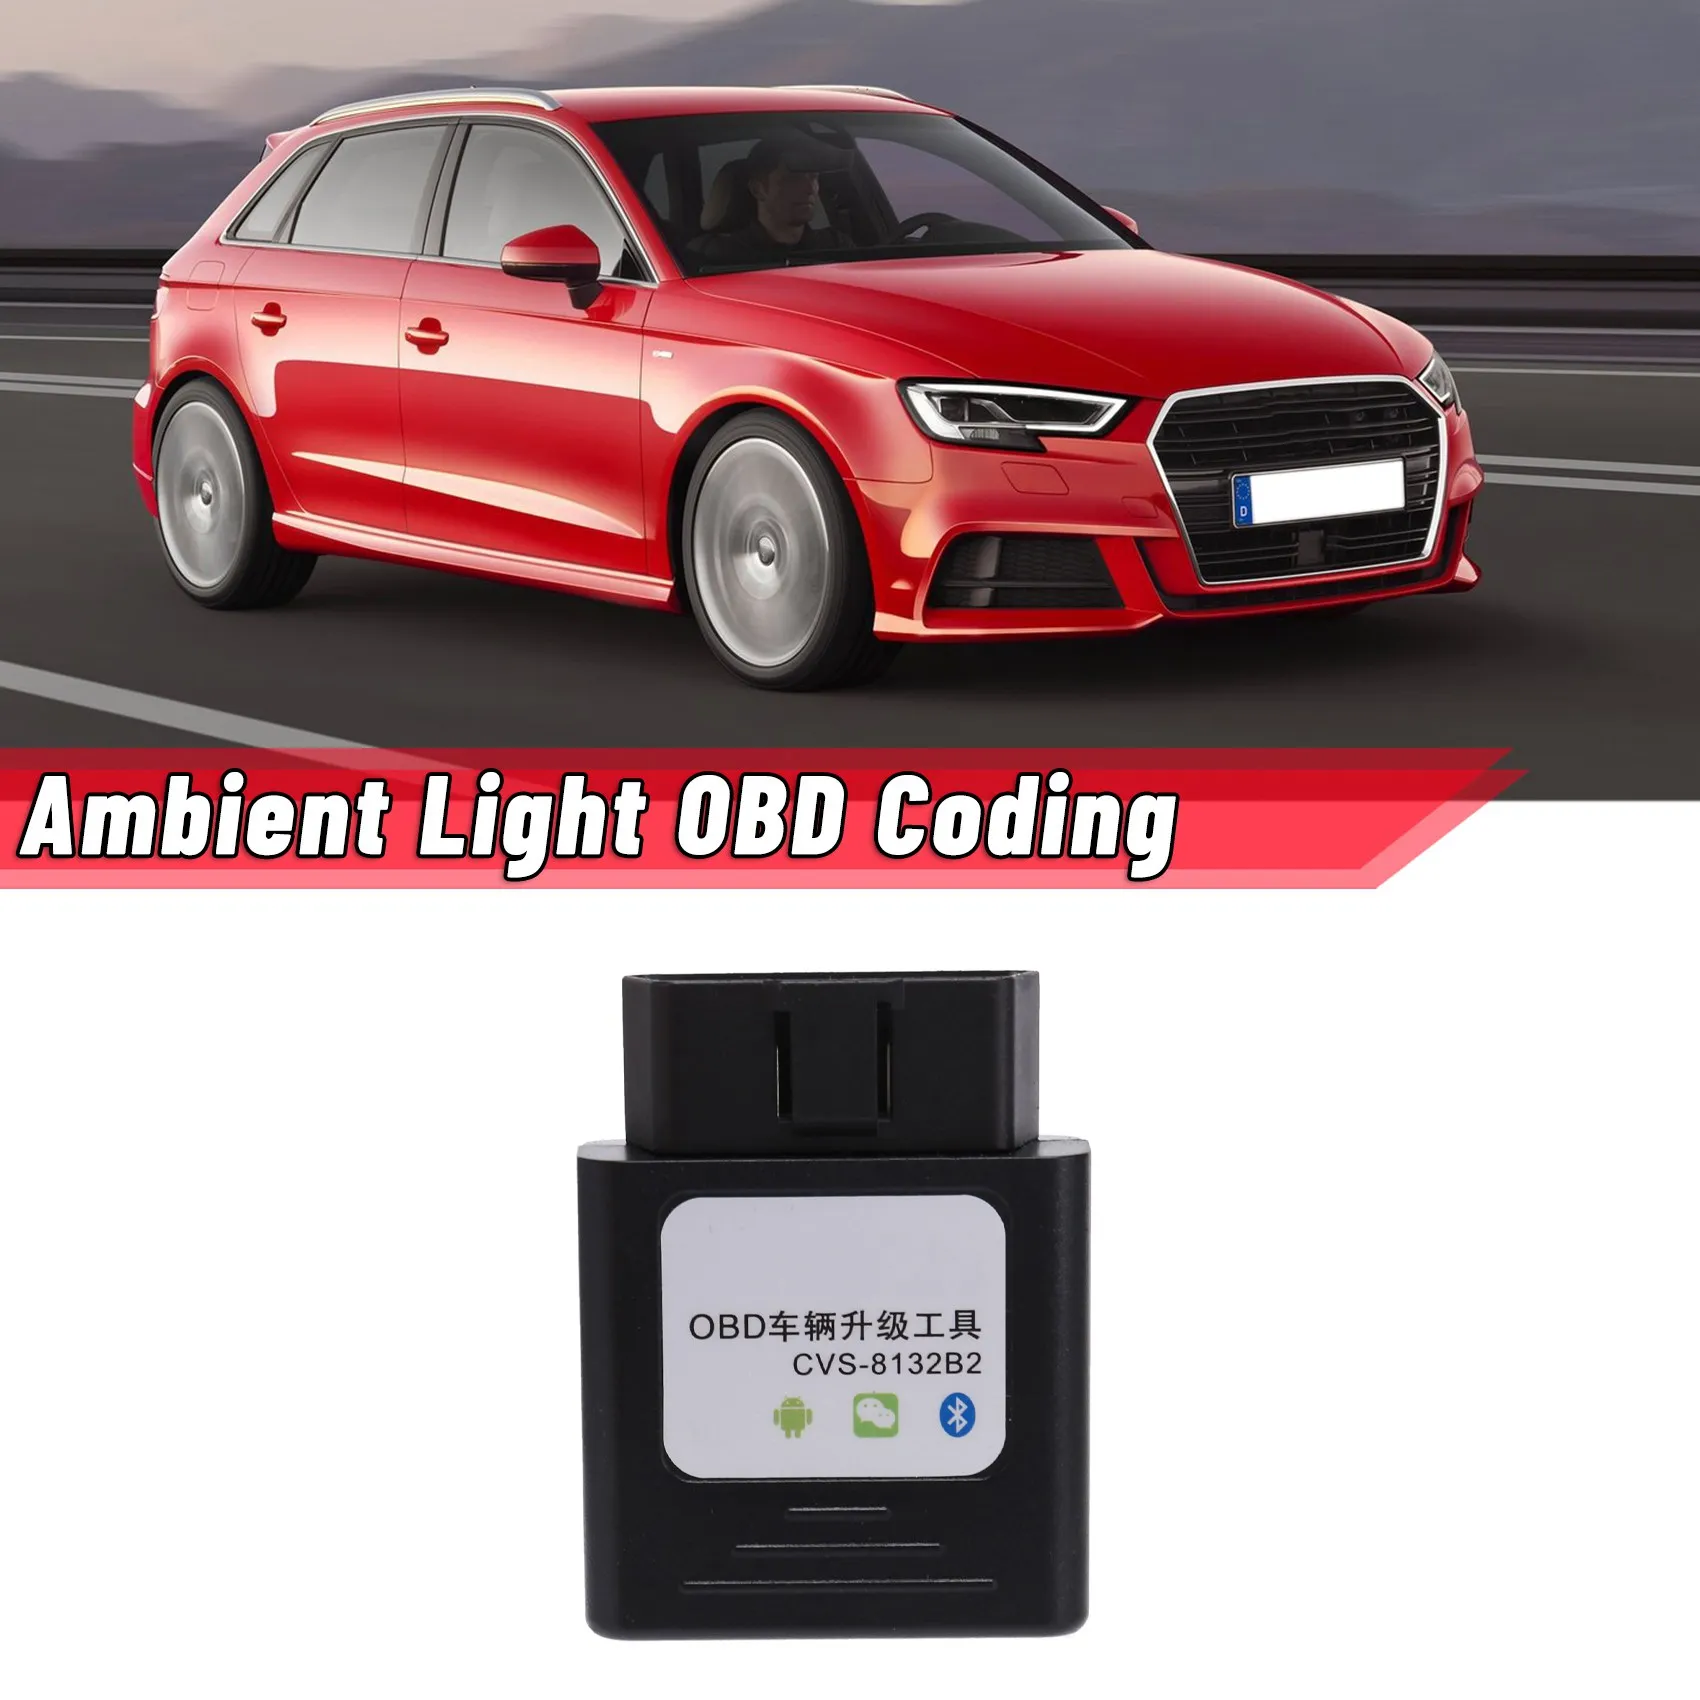 

Car Ambient Light OBD Coding for Mercedes-Benz A/B/C/GLC/GLA/GLB/CLA Class -Audi A3/A4L/A5/A6L/A7/A8L/Q2L/Q3/Q5/Q5L/Q7